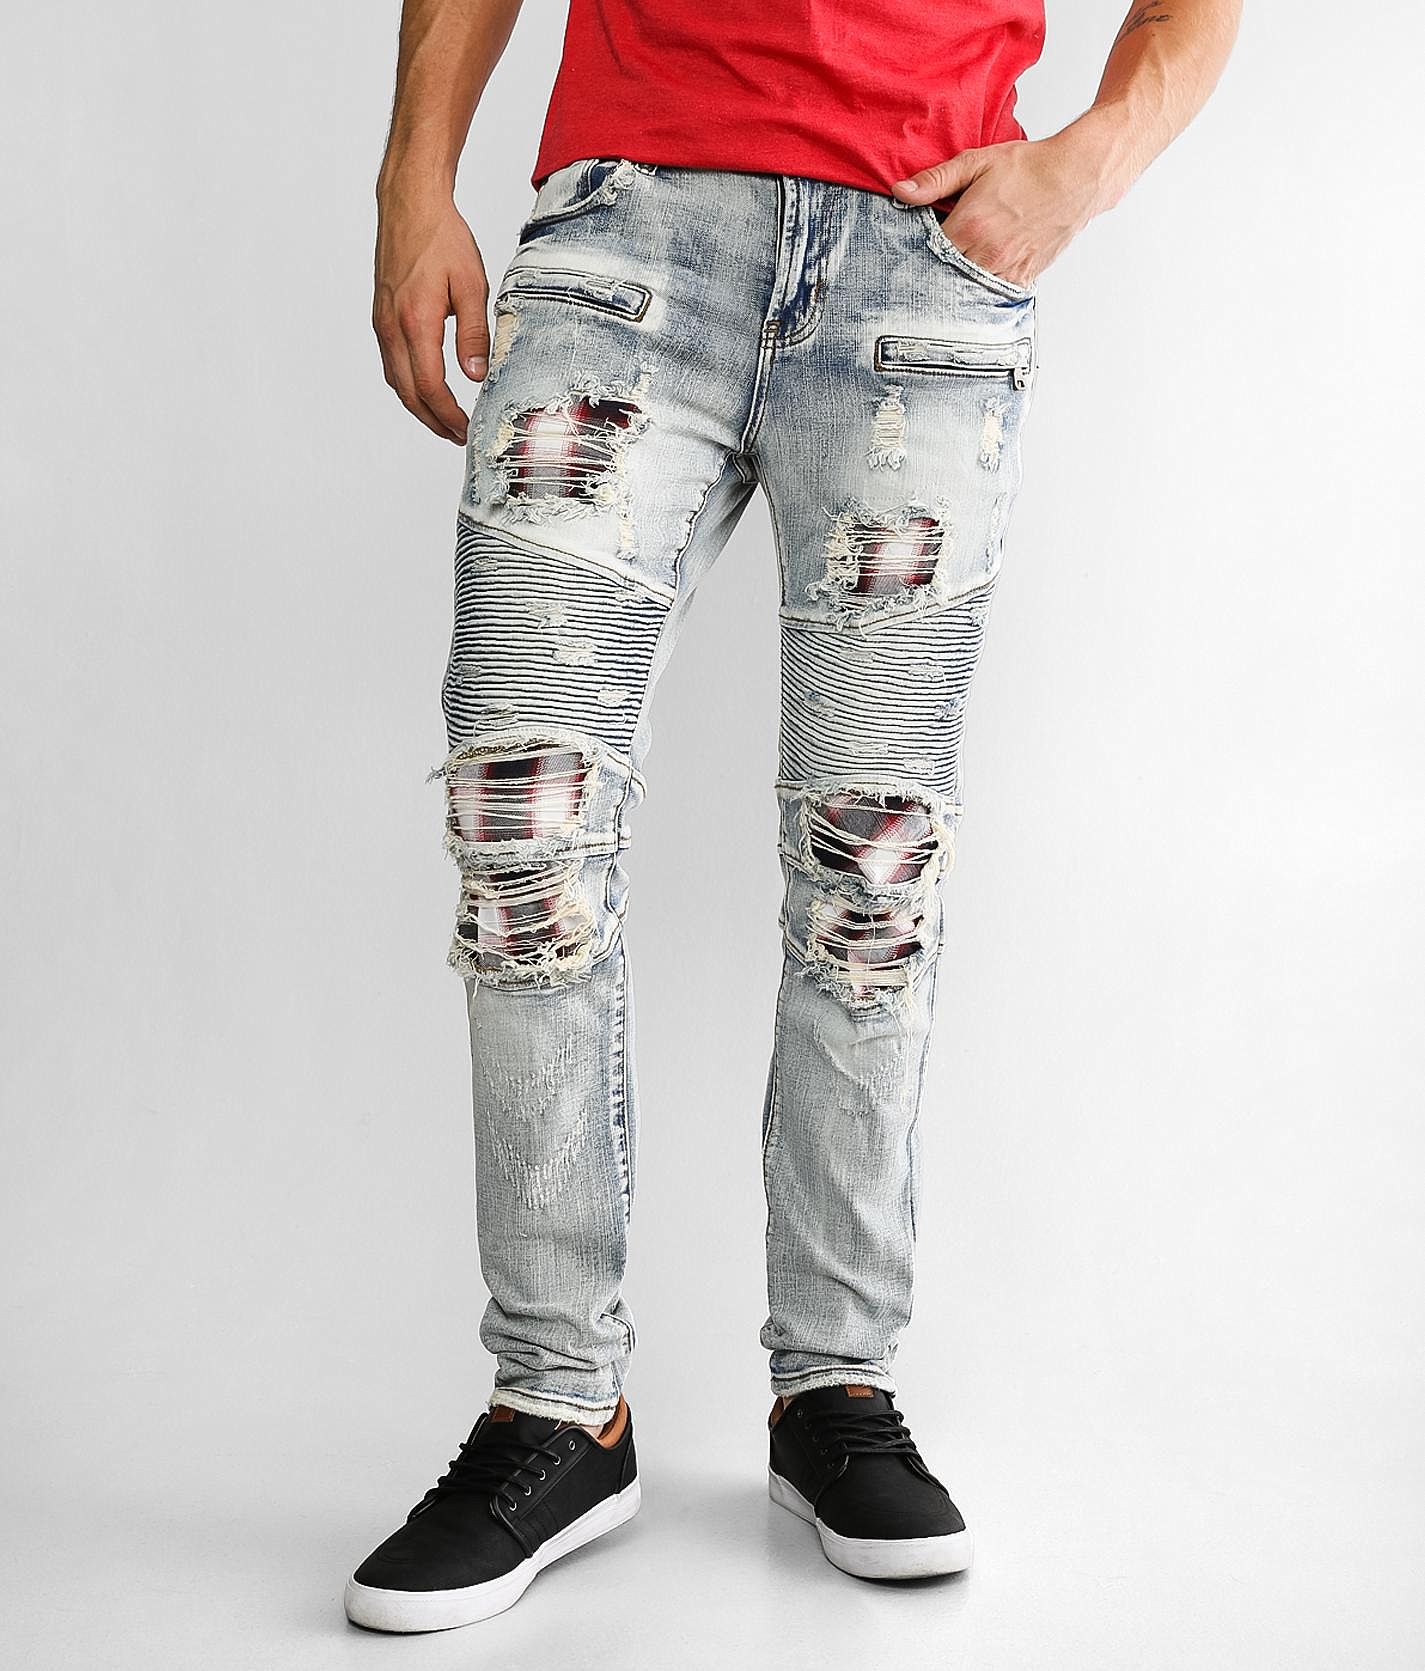 Buckle Men\'s Skinny Jean Stretch PREME - | in Moto Indigo Jeans